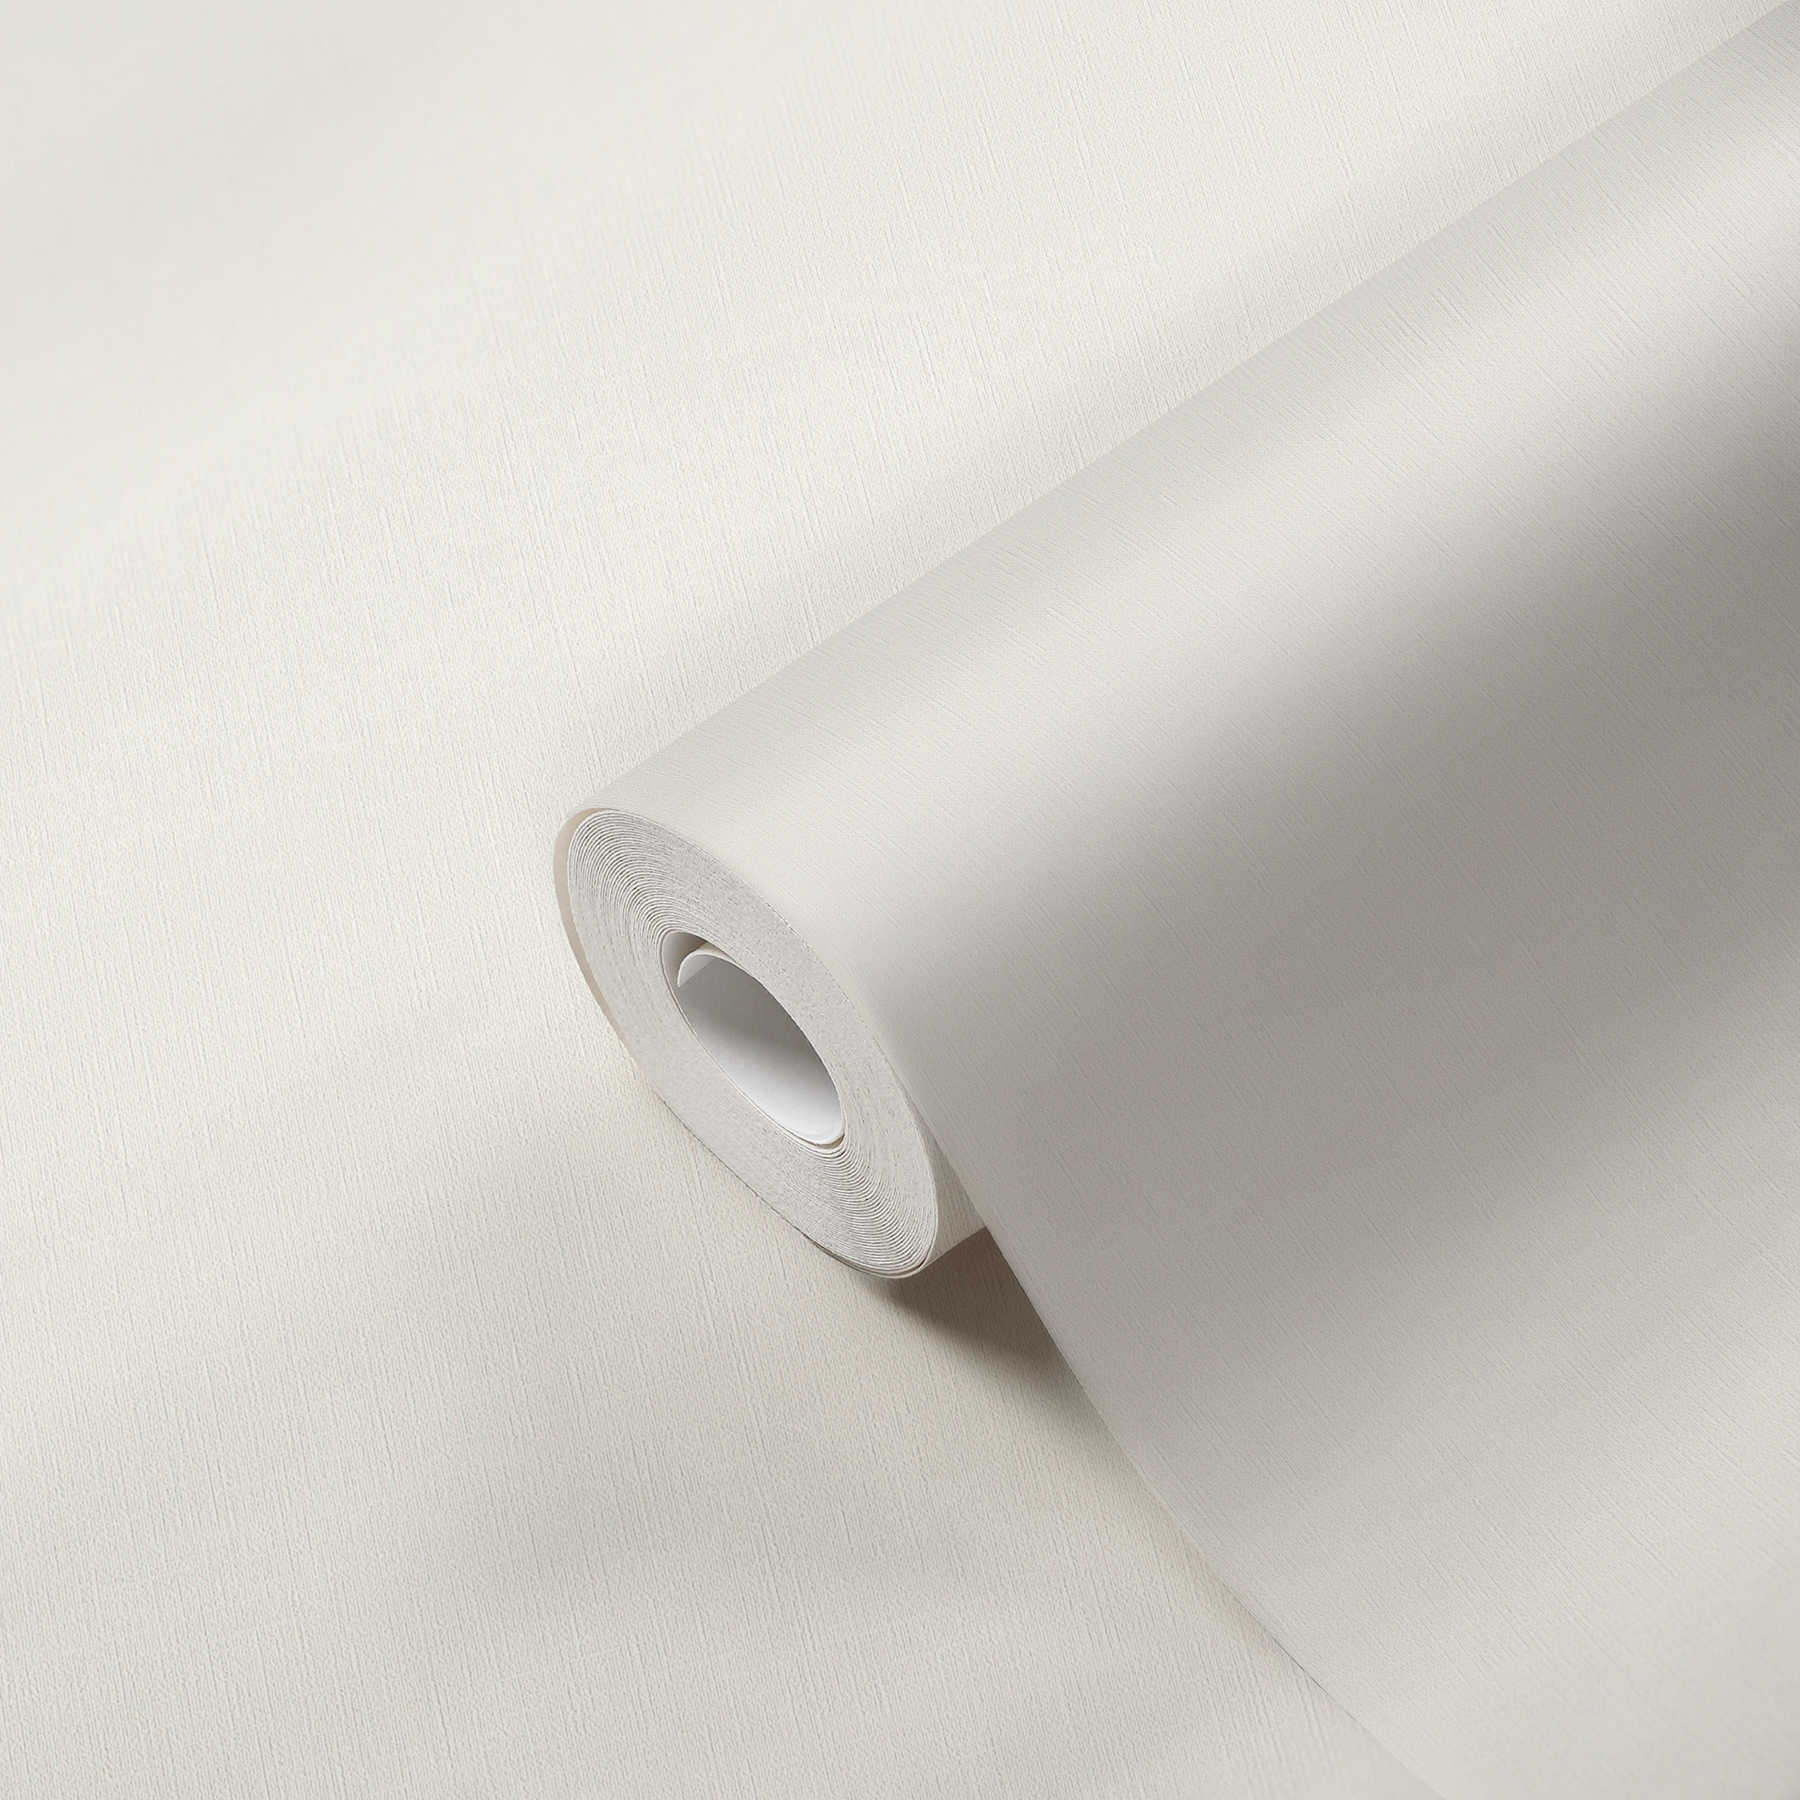             Papier peint uni intissé, blanc opaque avec finition satinée
        